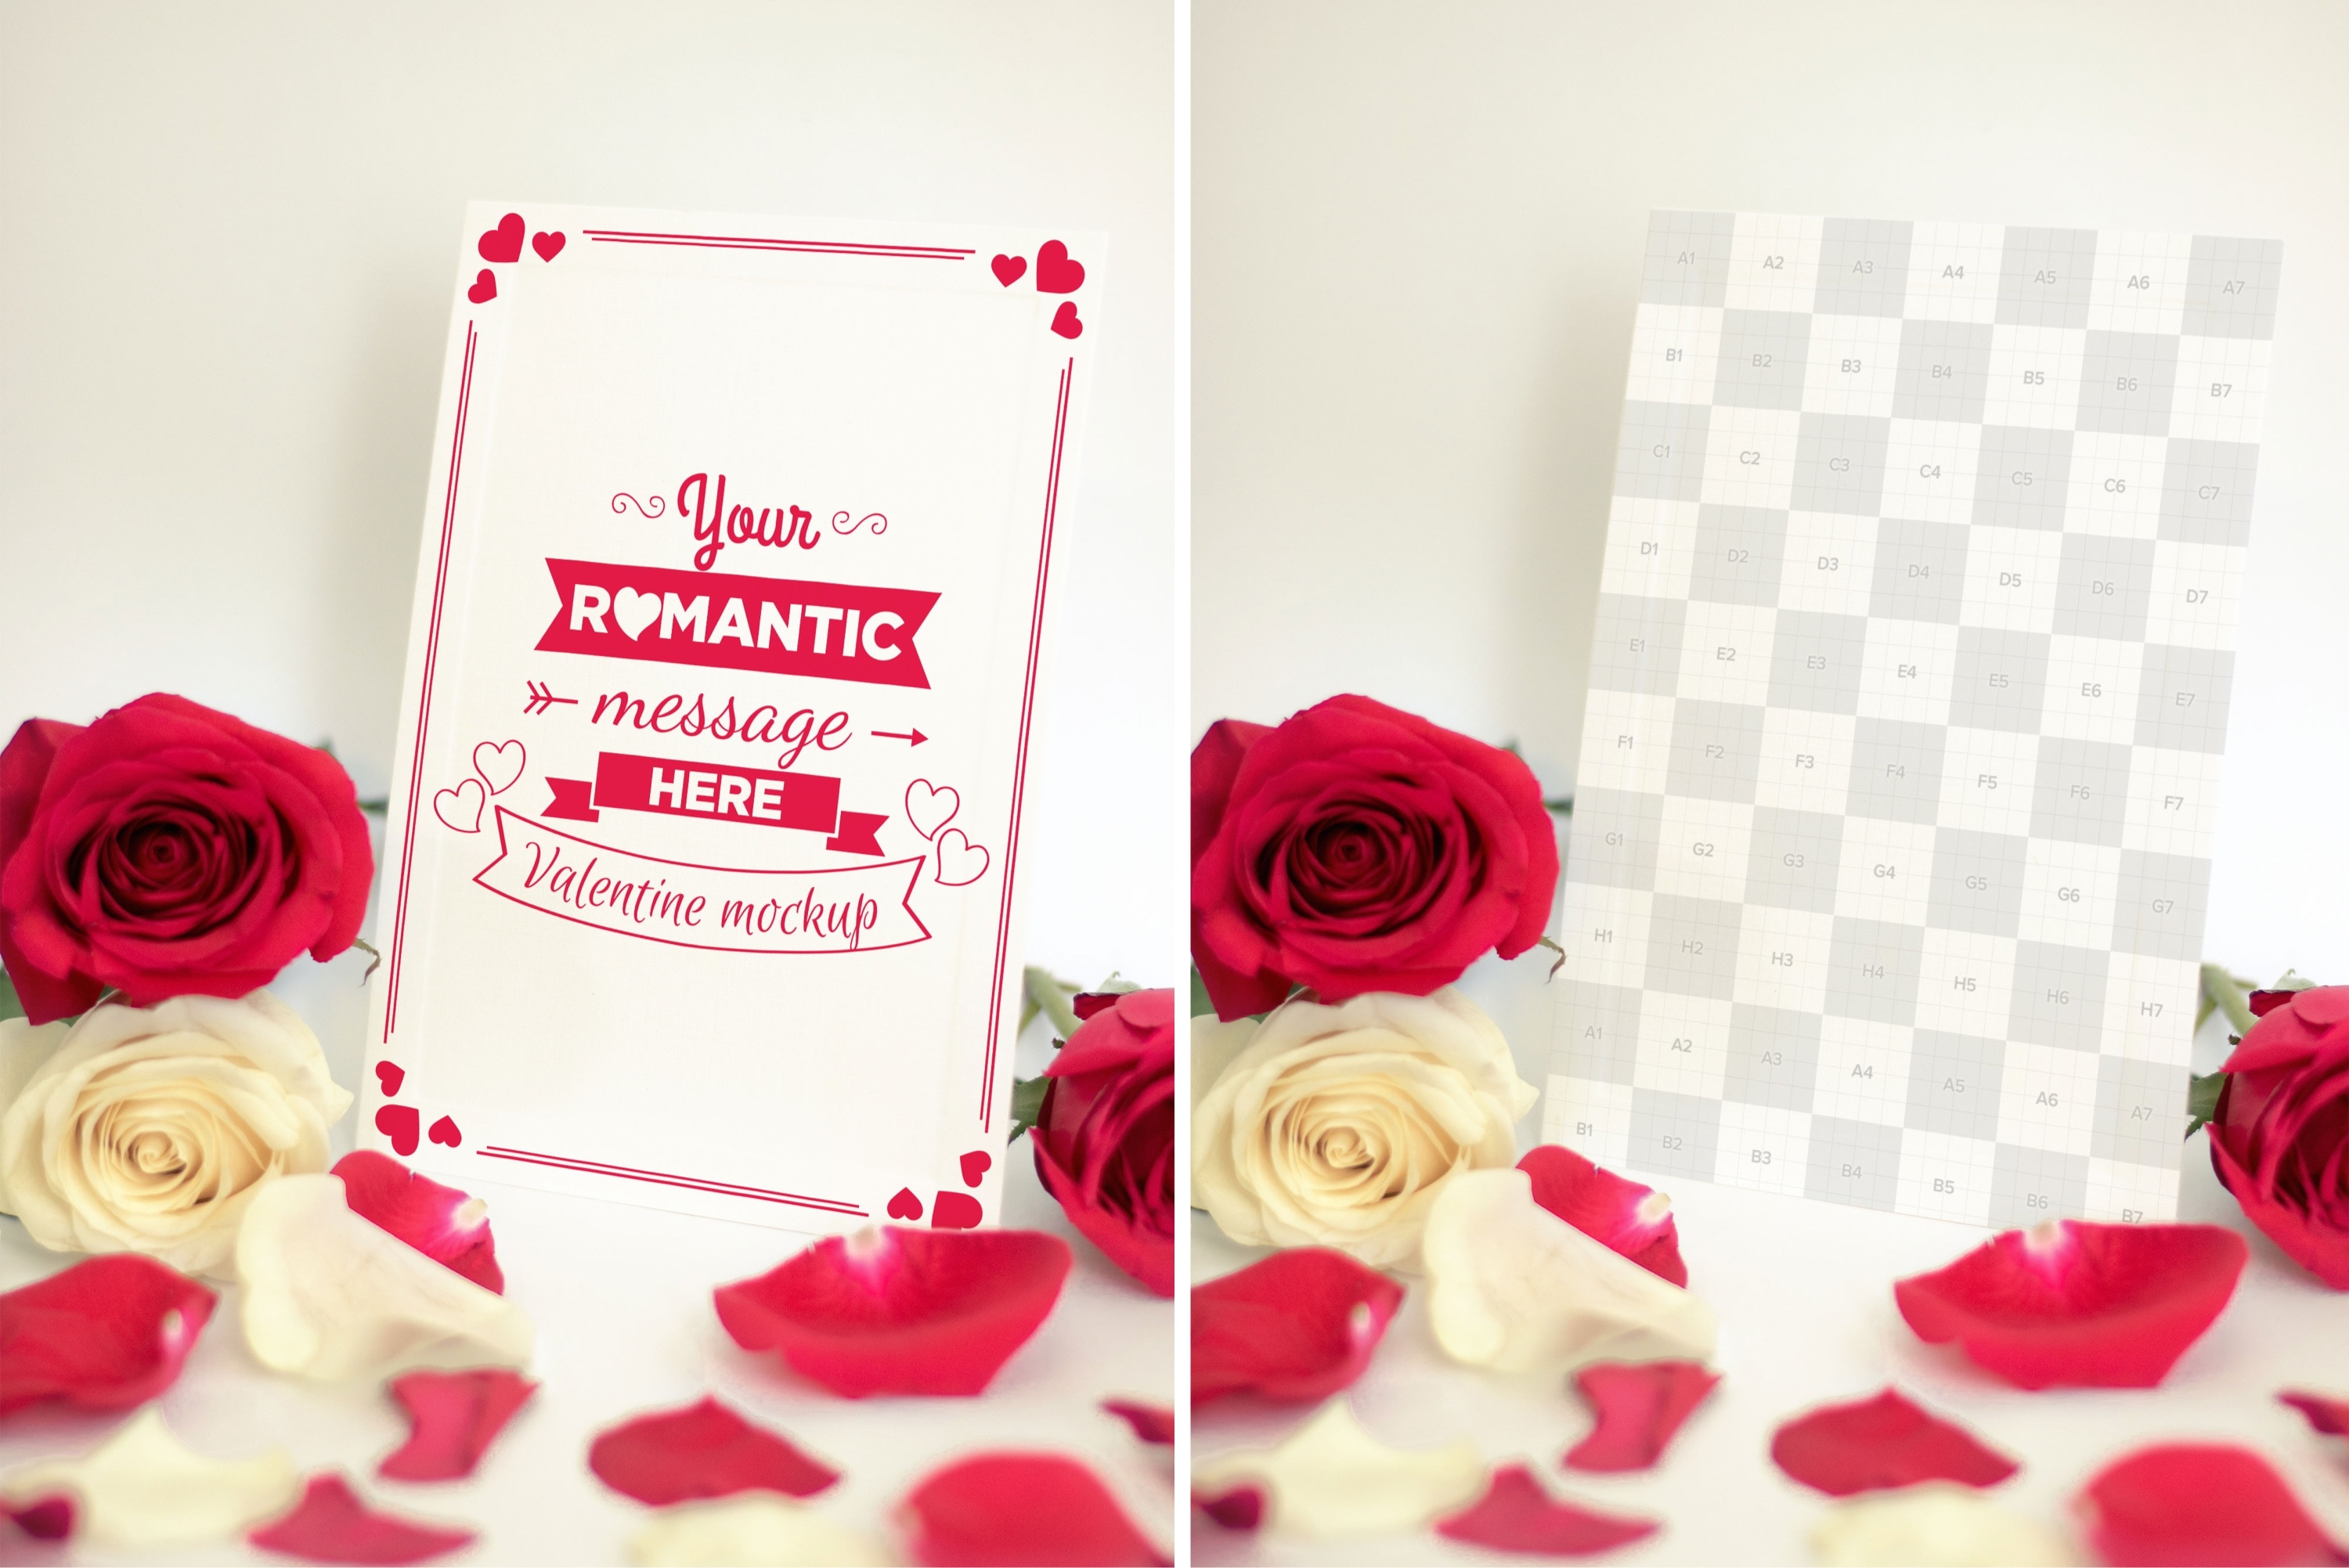 情人节贺卡设计样机模板 Valentine Card Mockup 06插图